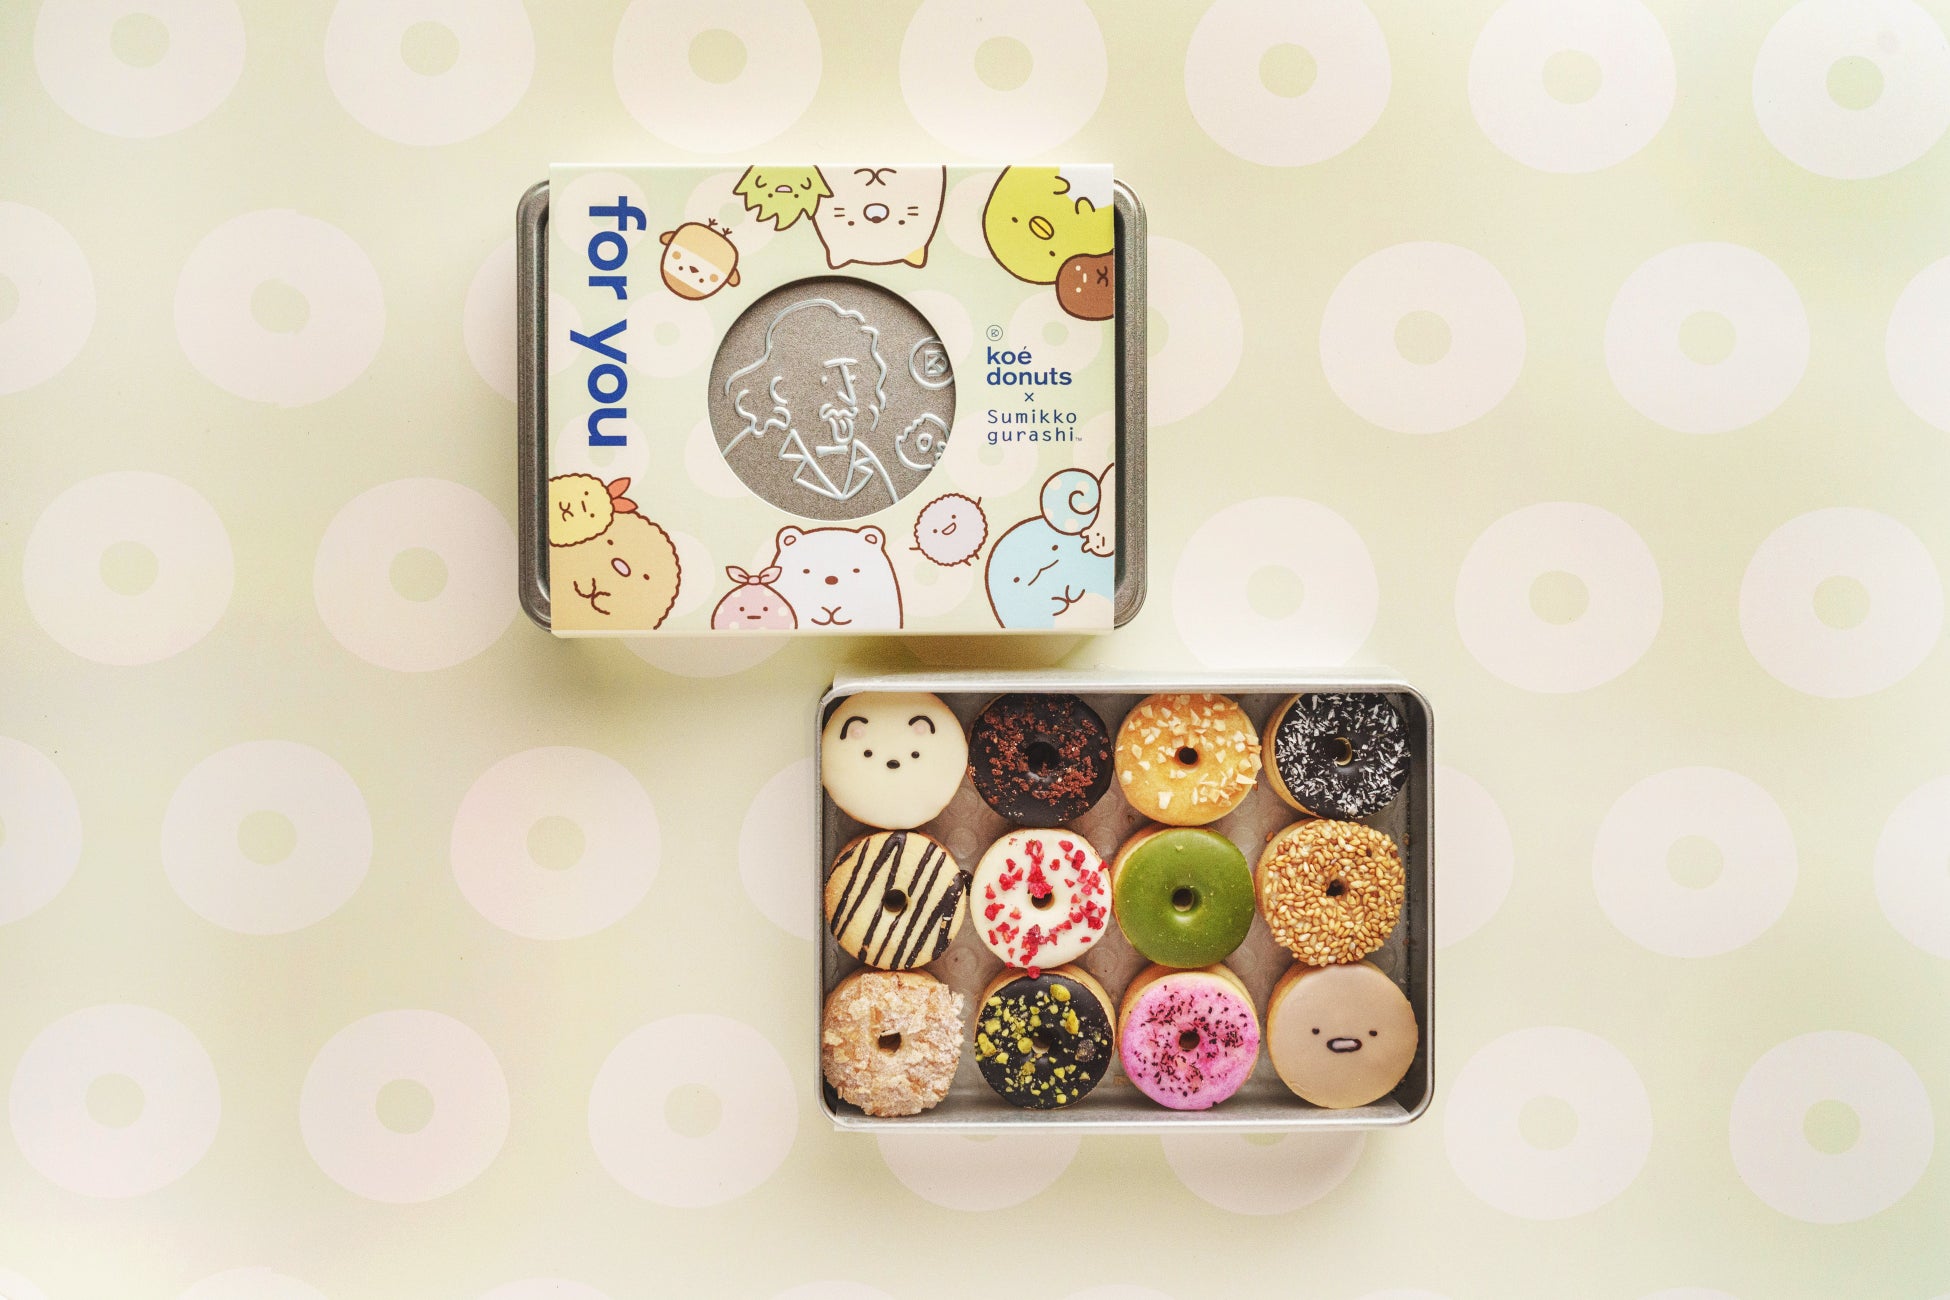 「すみっコぐらし」× koe donuts 初コラボレーション・愛らしいすみっコたちが主役の限定クッキー缶を8月1日(木)に発売開始